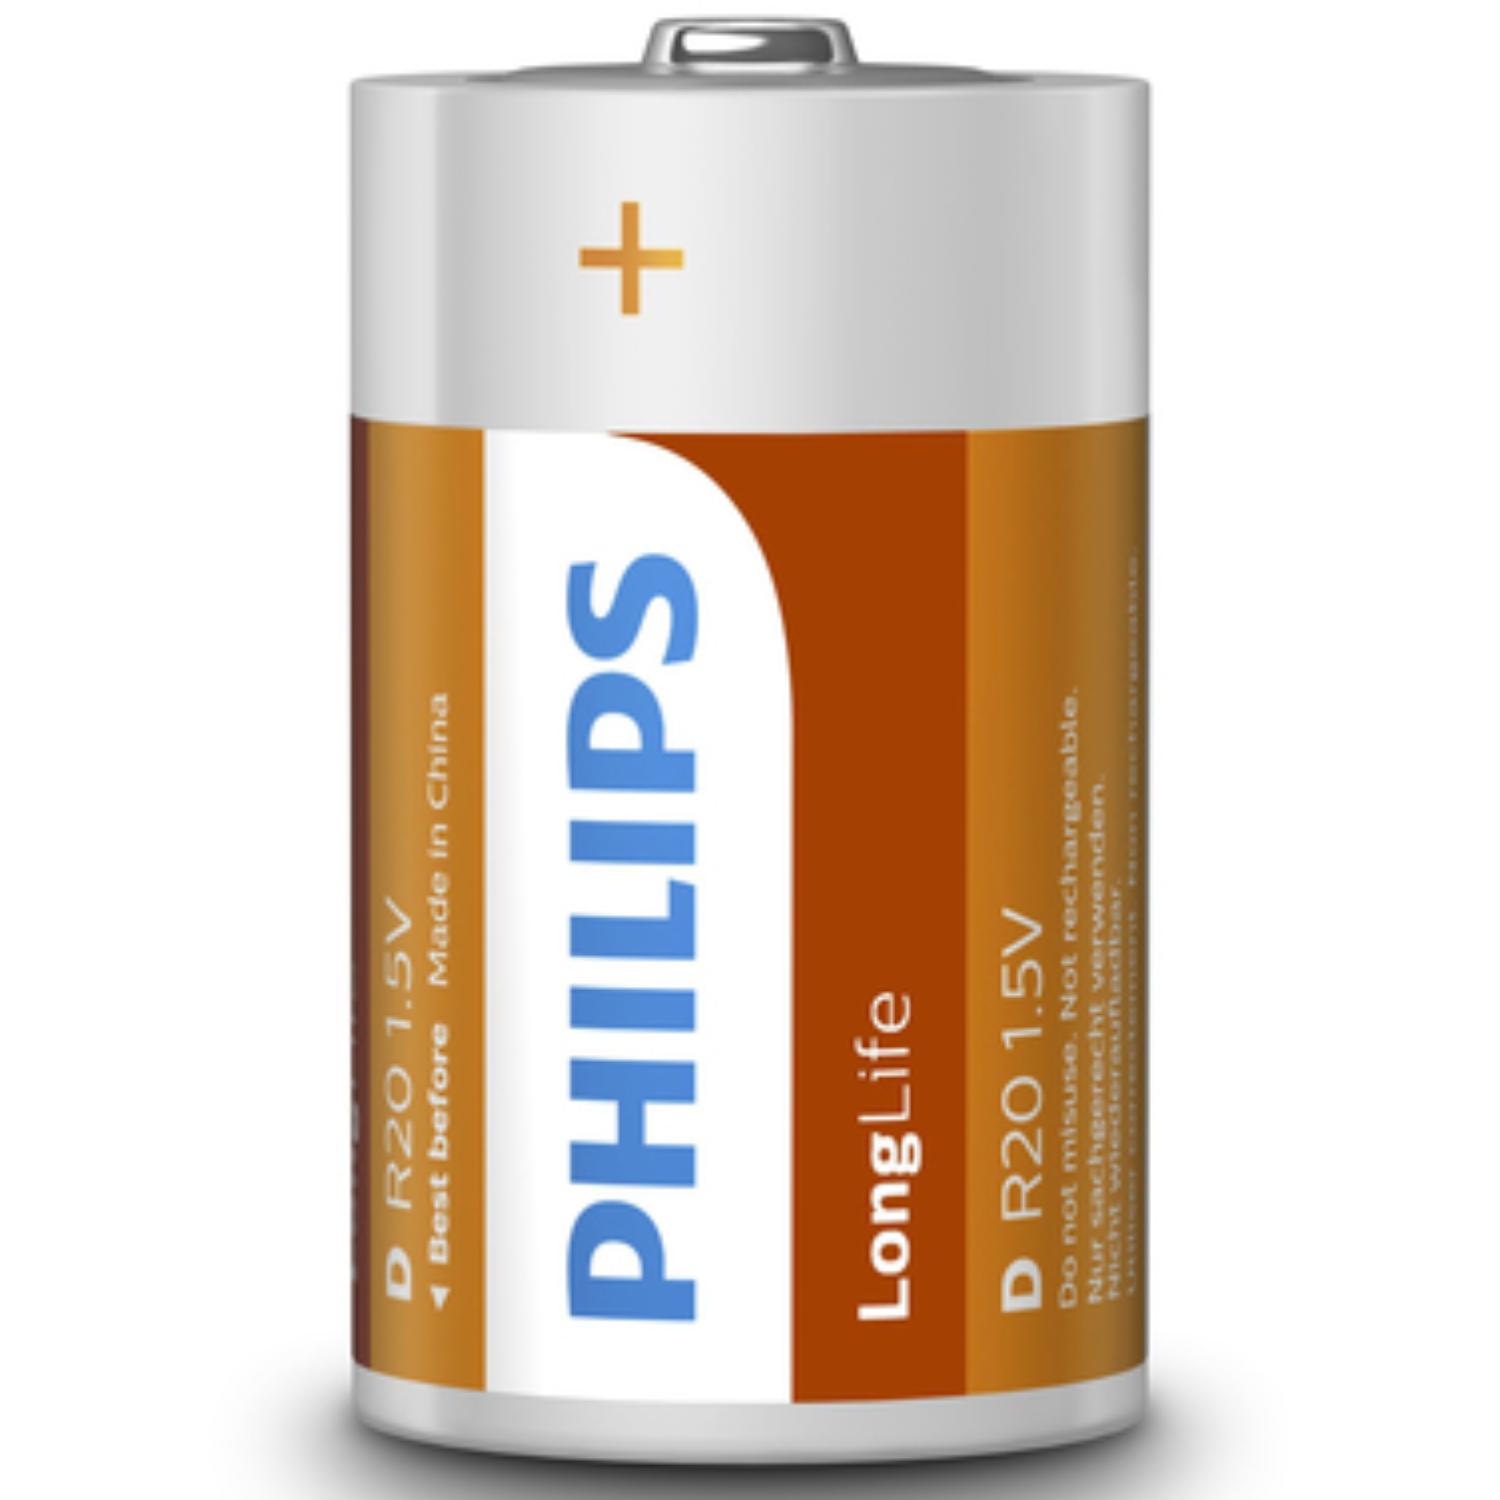 D batterij - Philips